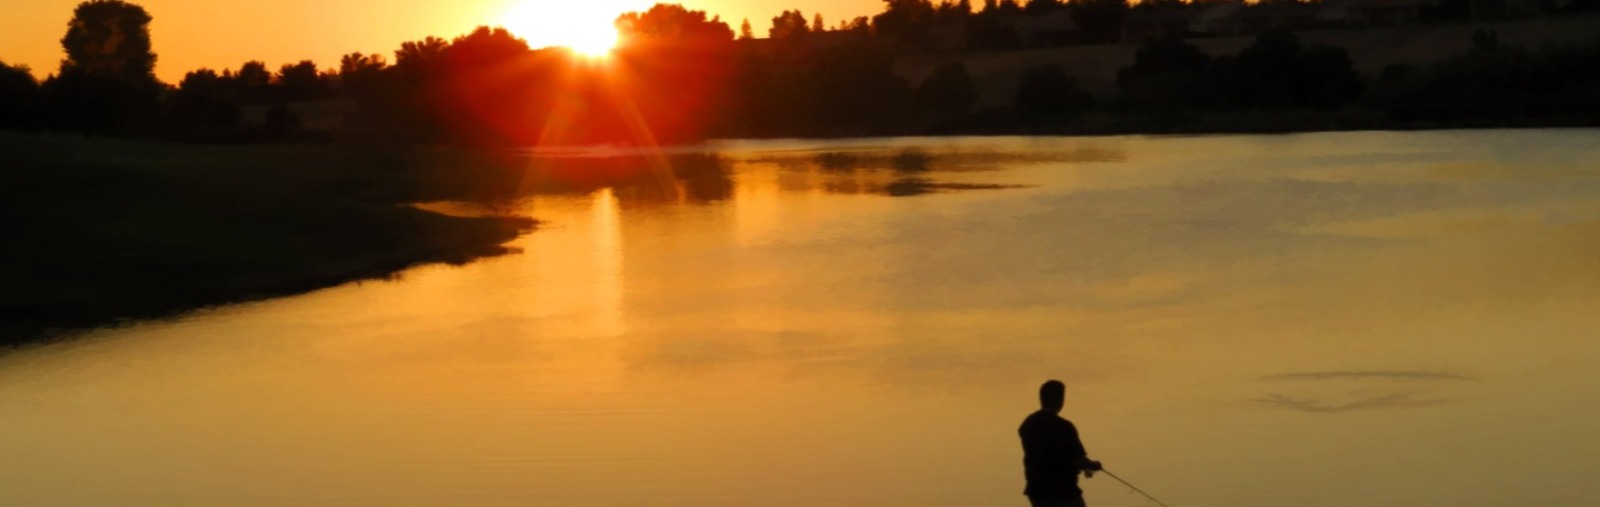 Man fishing at pond at sunset